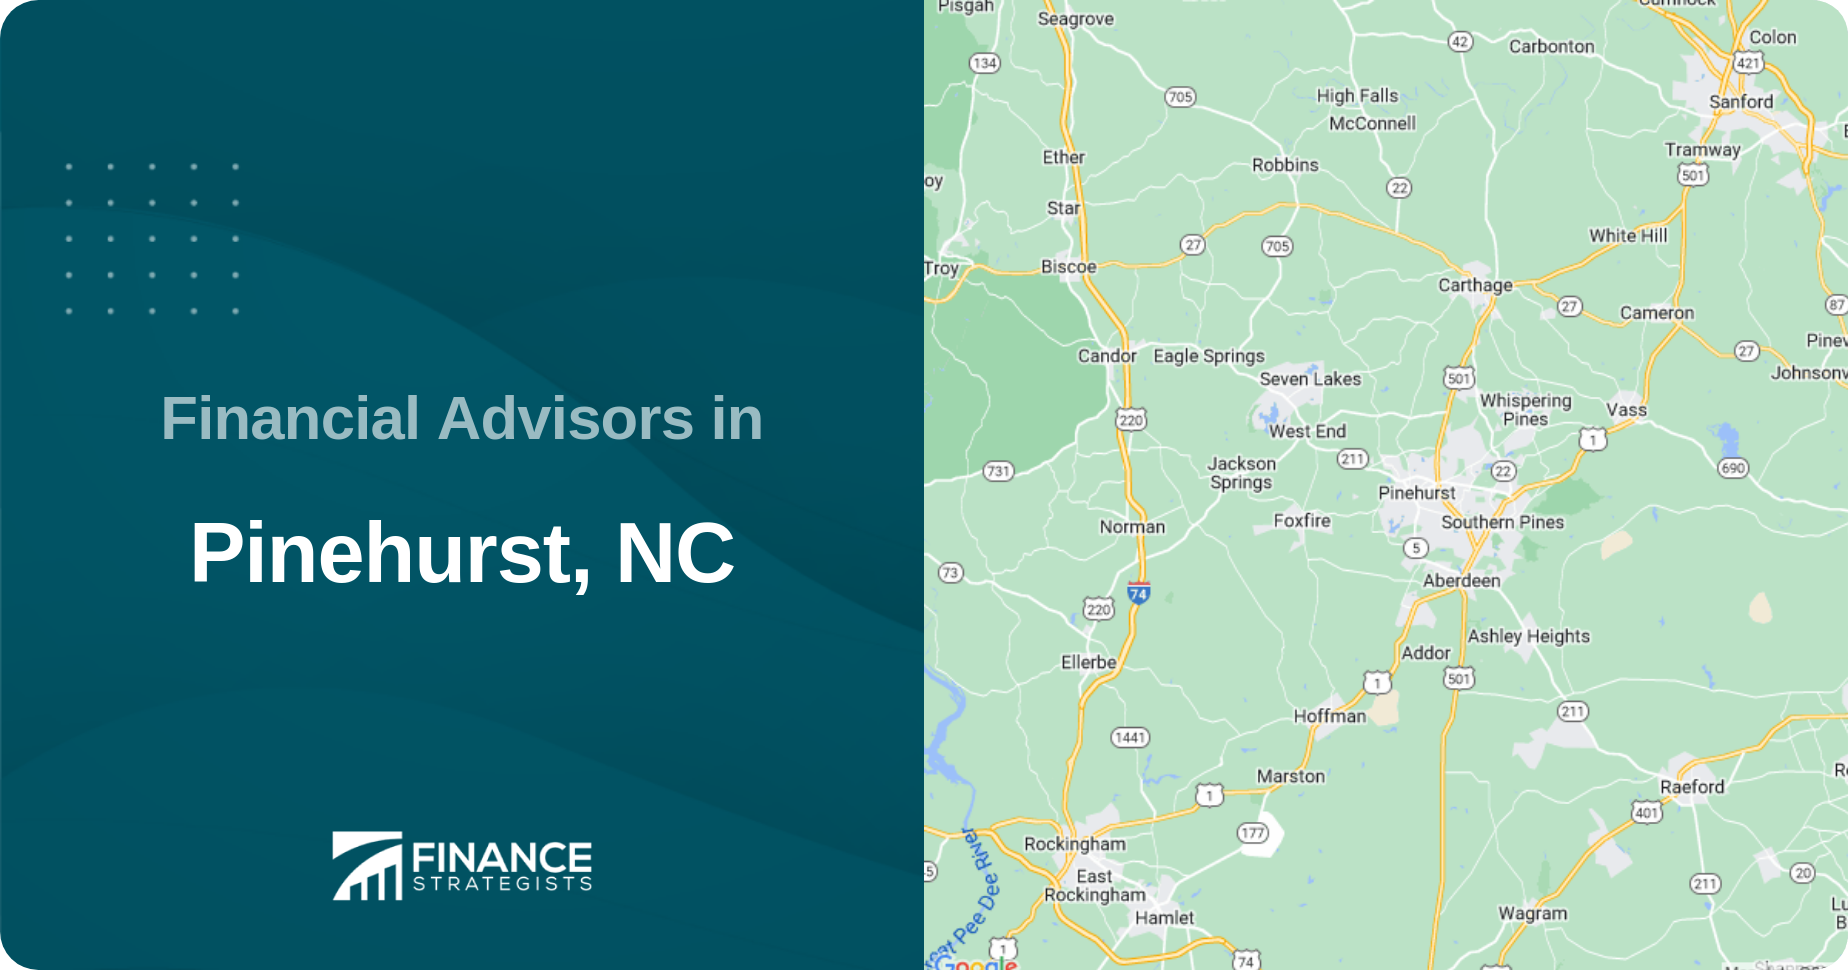 Financial Advisors in Pinehurst, NC